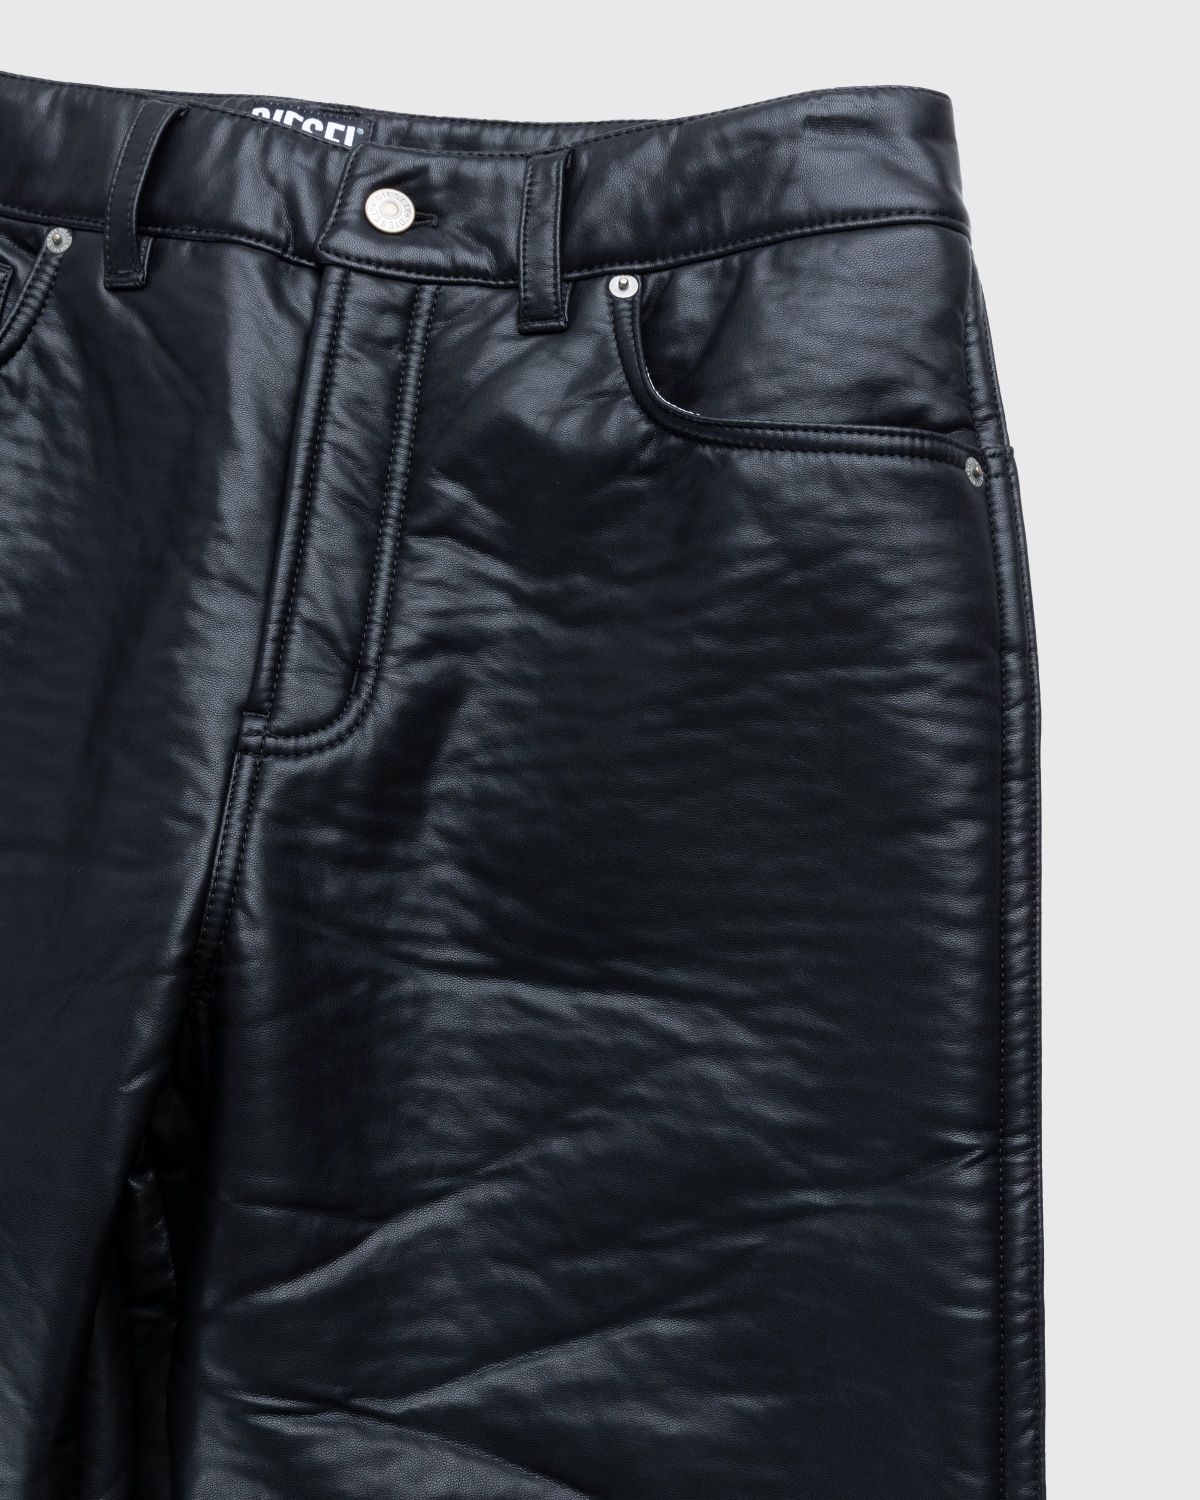 Diesel – Cirio Biker Trousers Black - Trousers - Black - Image 5